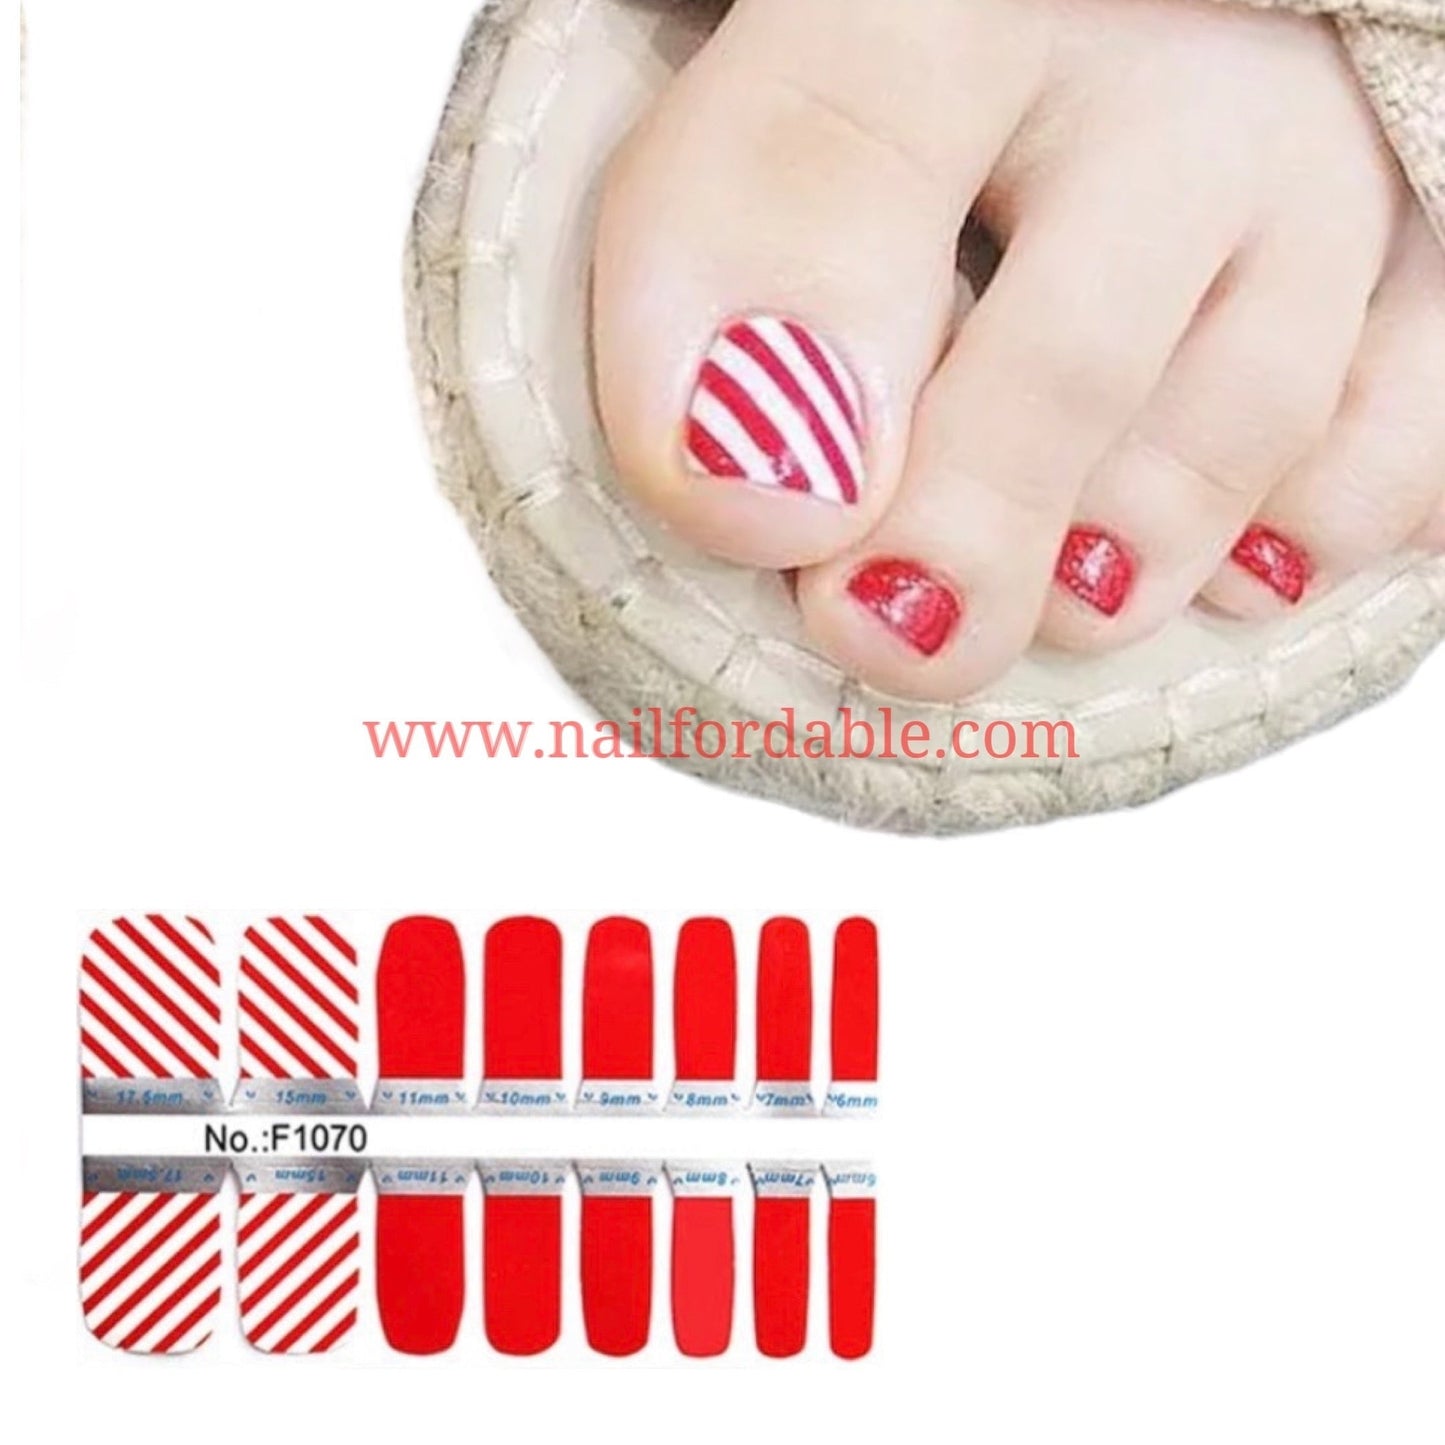 Candy cane Nail Wraps | Semi Cured Gel Wraps | Gel Nail Wraps |Nail Polish | Nail Stickers